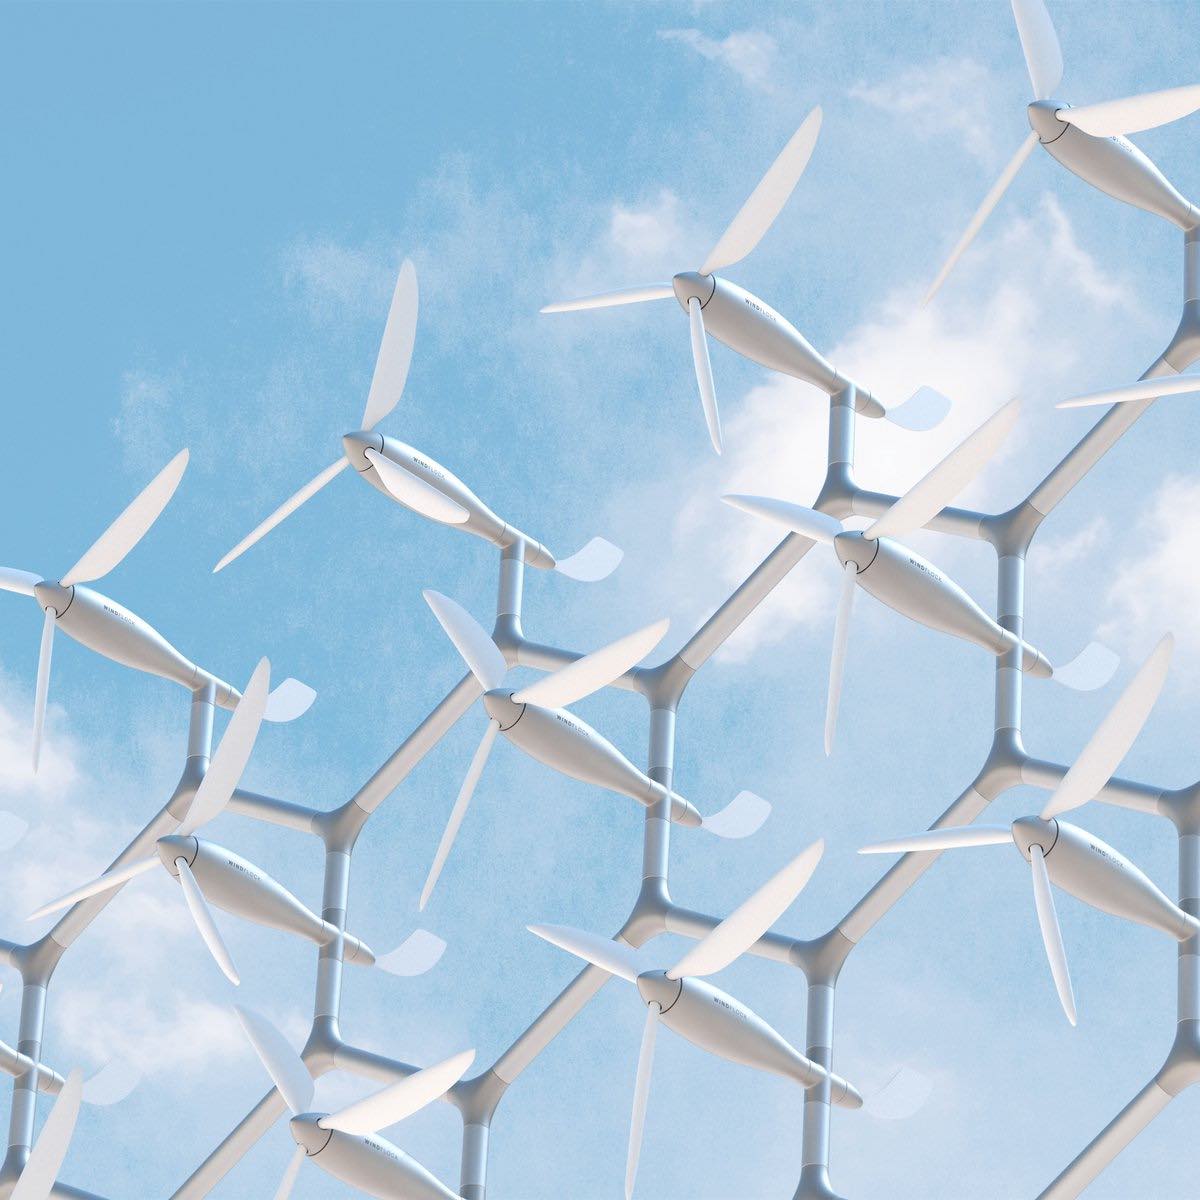 Estas turbinas eólicas hacen que obtener energía renovable sea tan fácil como el montaje de un LEGO